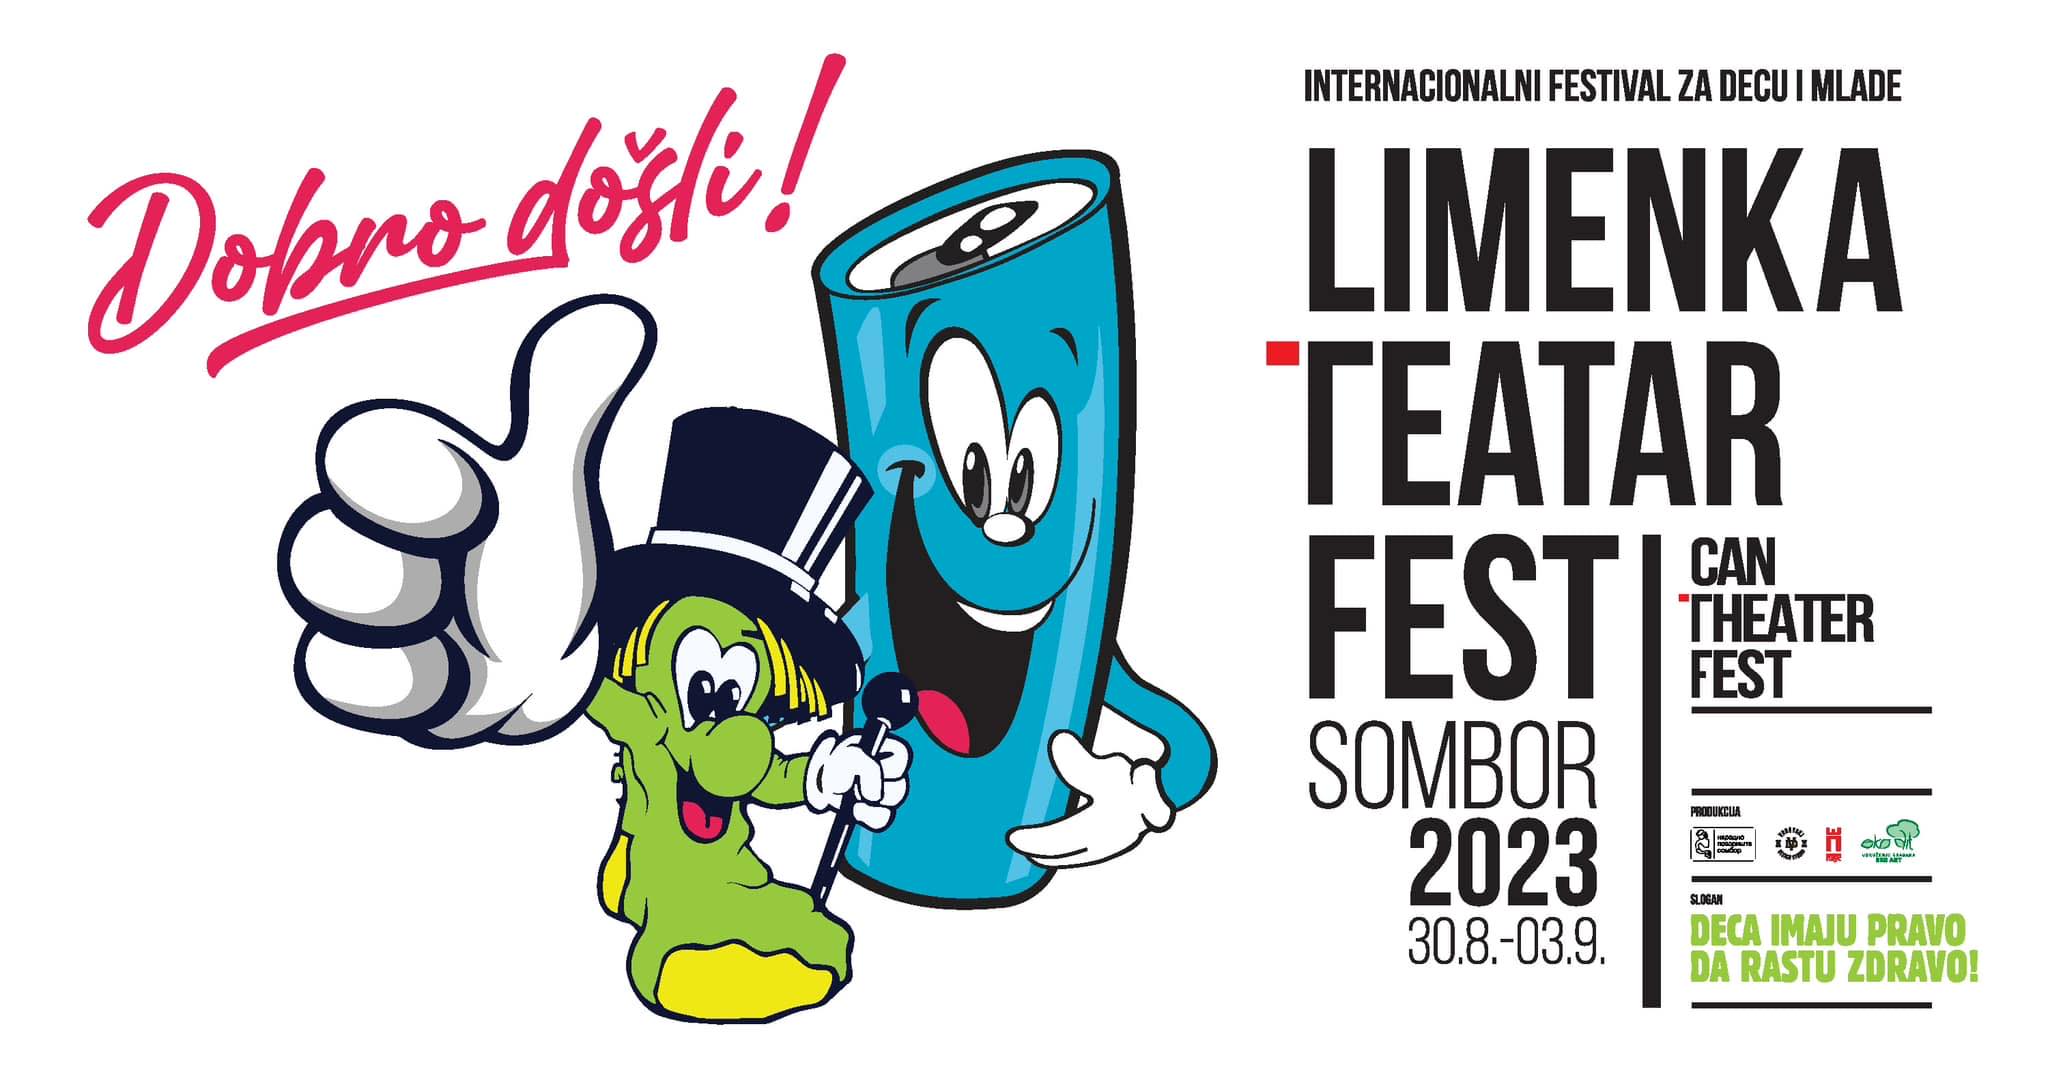 „Limenka teatar fest“ od 30. avgusta u Somboru